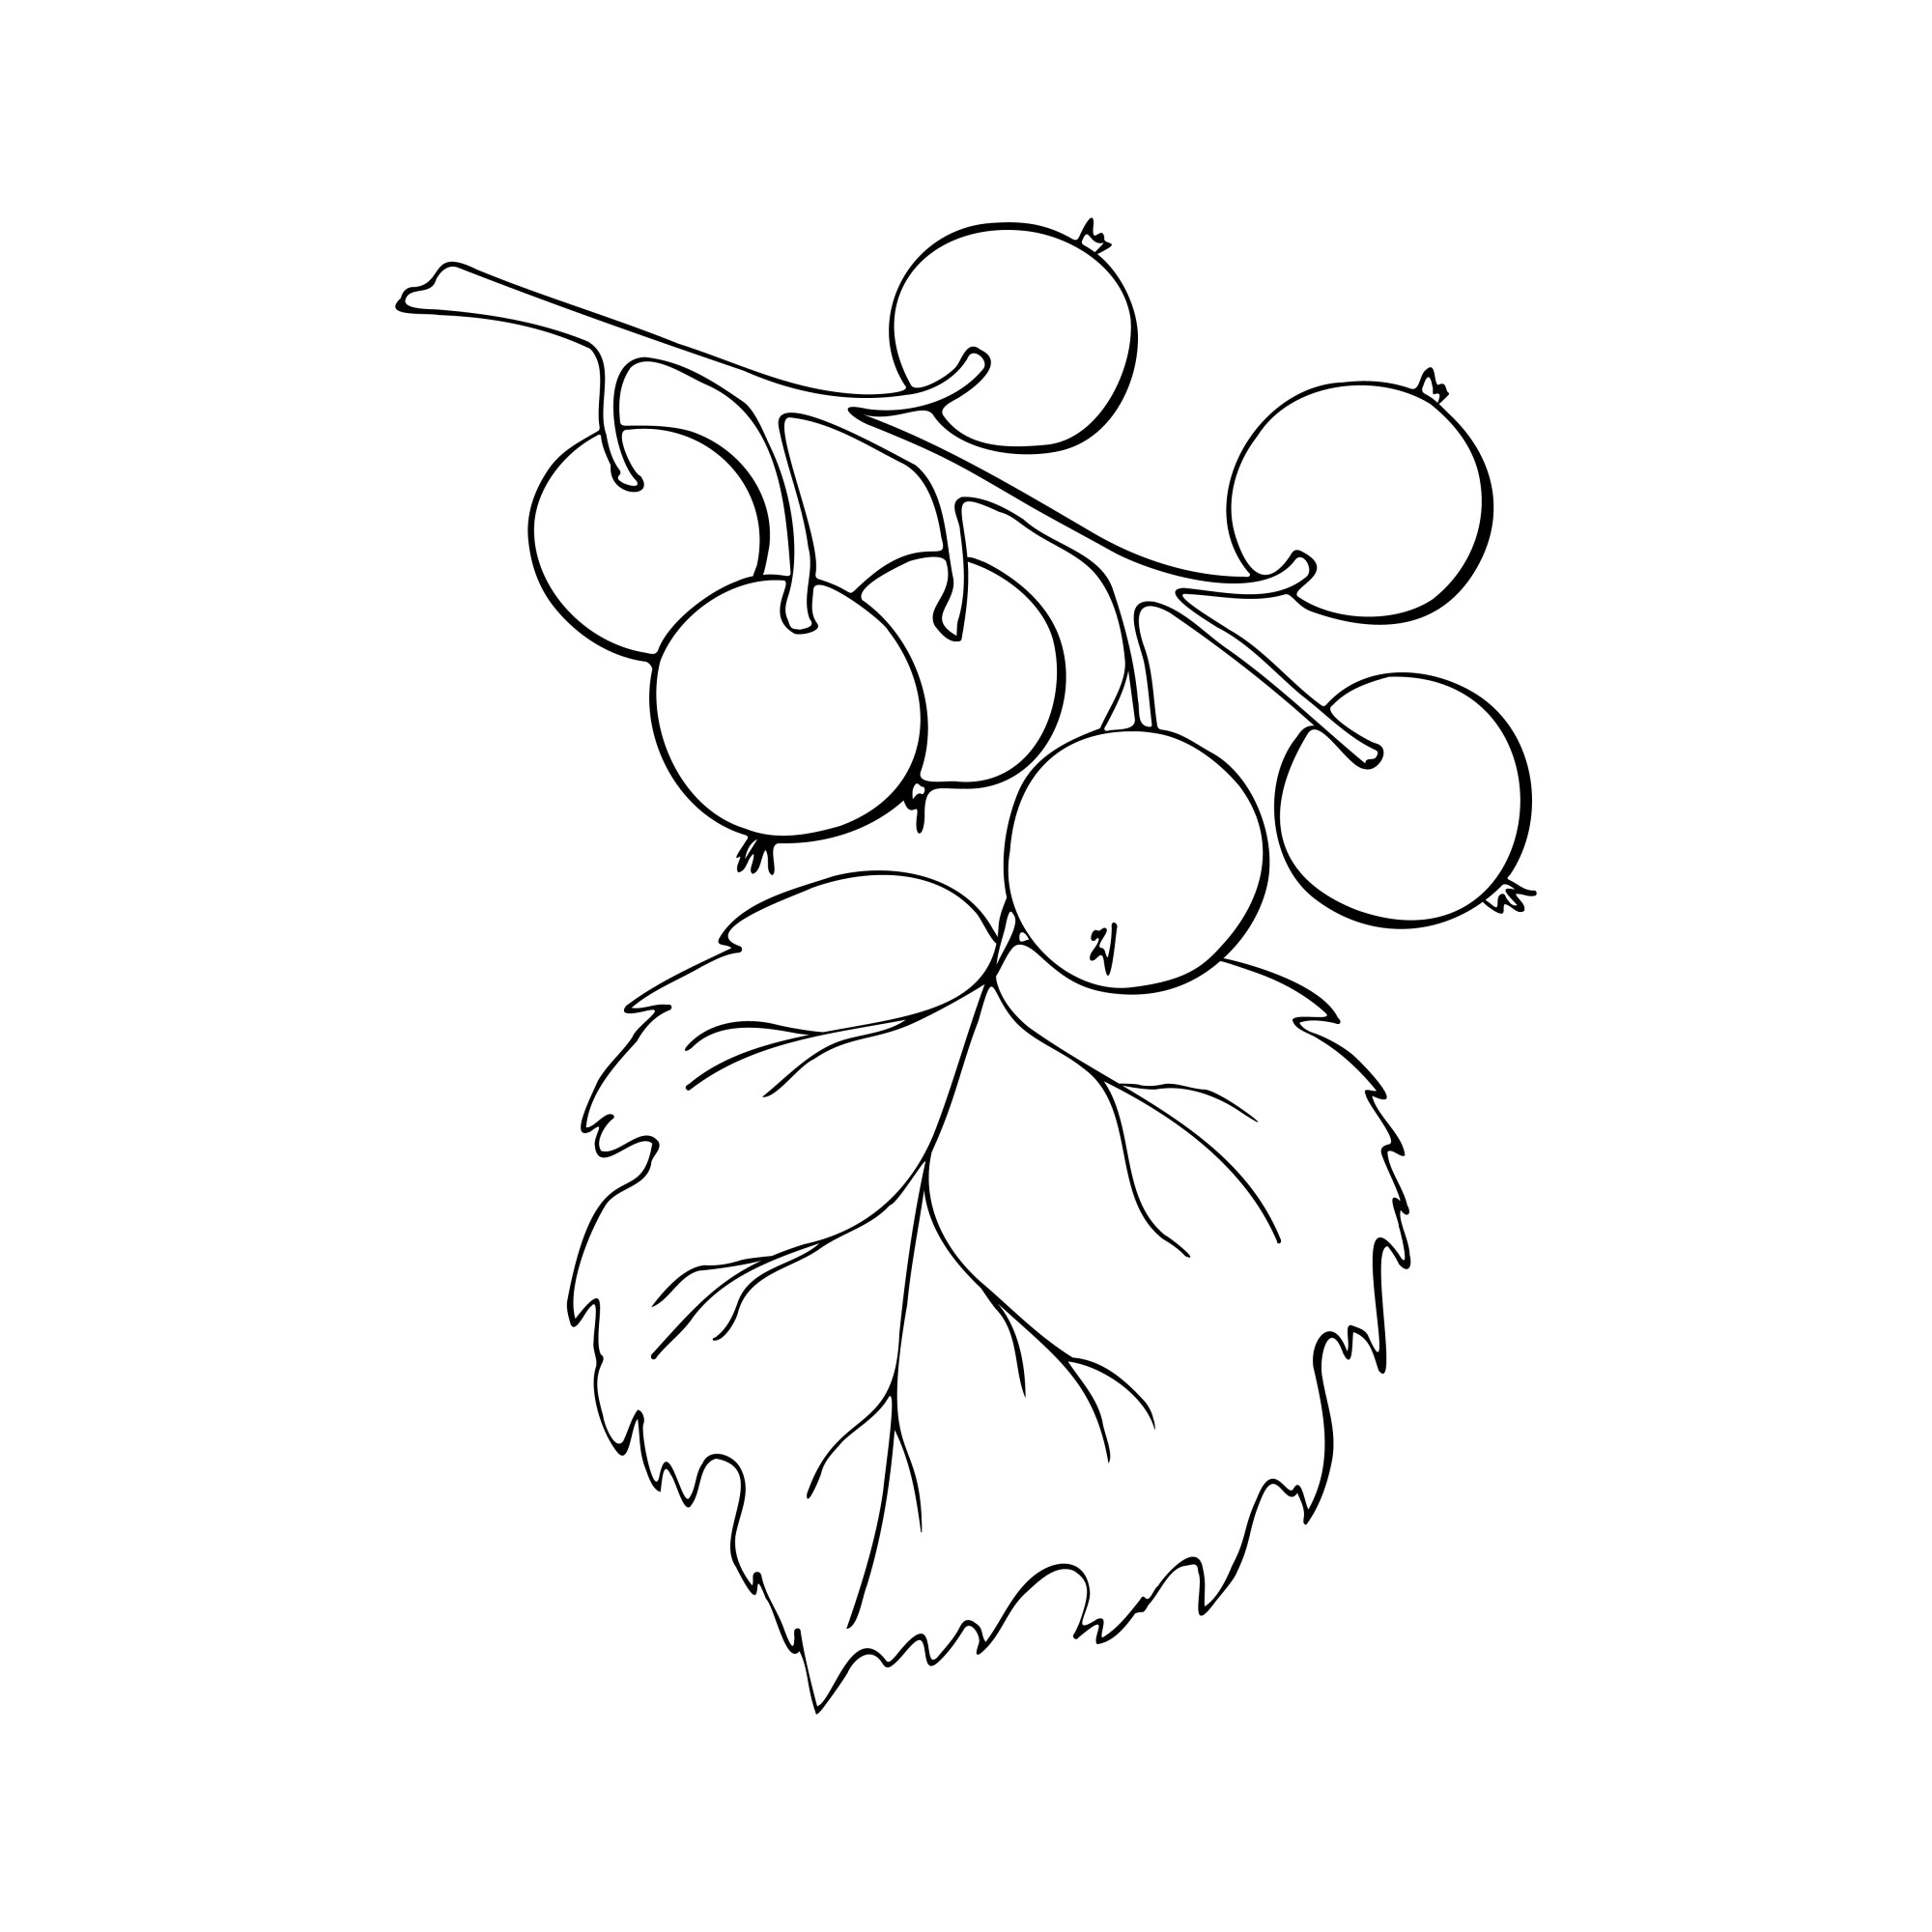 Раскраска для детей: ветка смородины с ягодами и листом